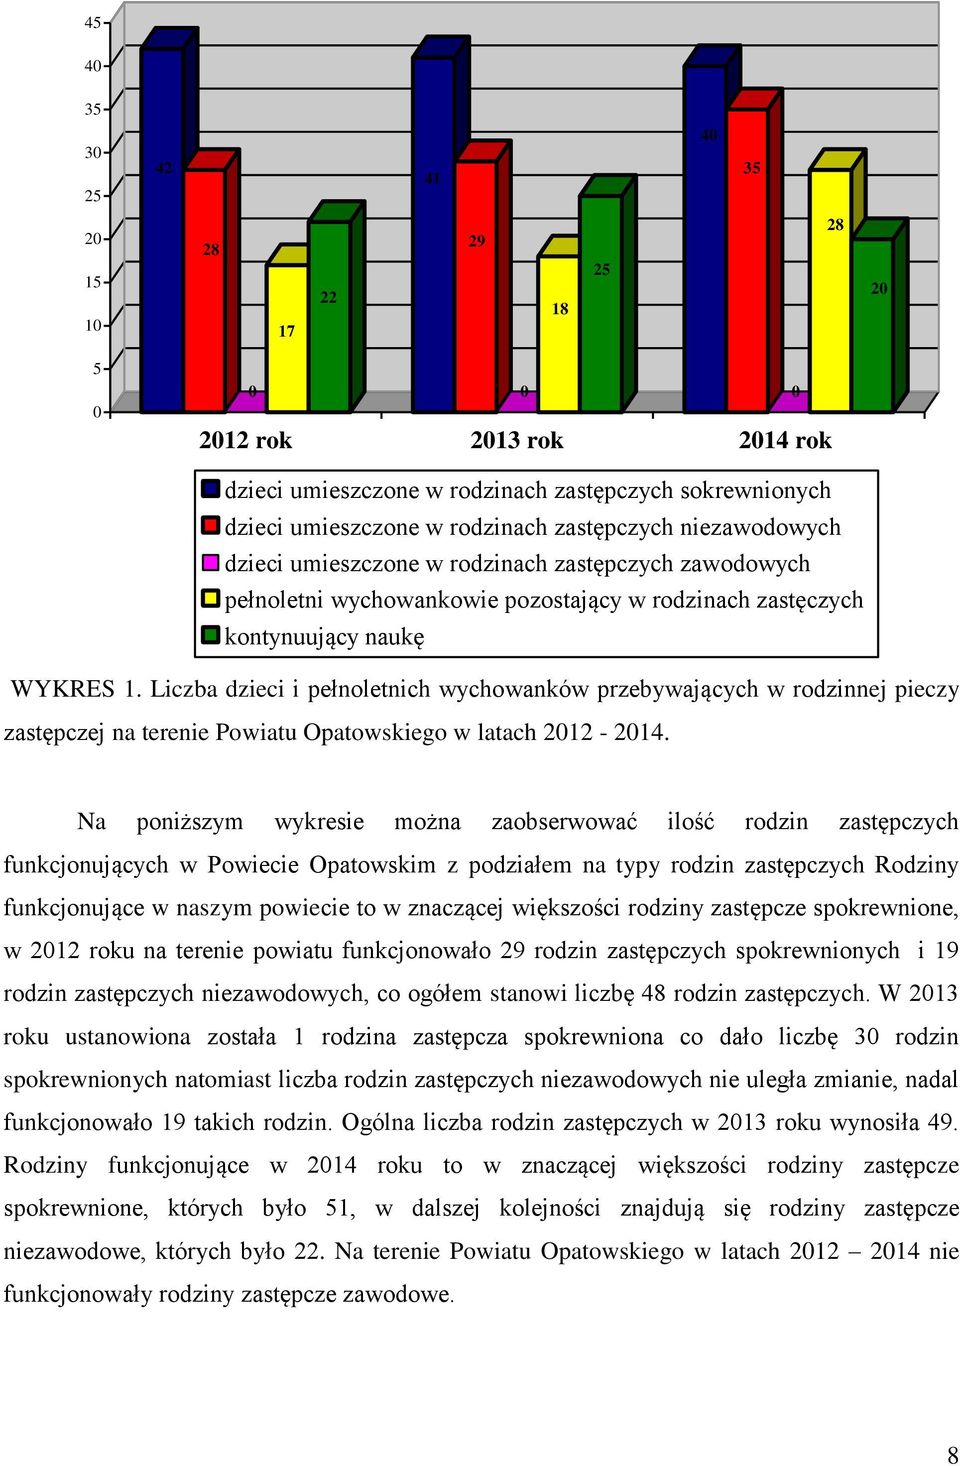 Liczba dzieci i pełnoletnich wychowanków przebywających w rodzinnej pieczy zastępczej na terenie Powiatu Opatowskiego w latach 2012-2014.